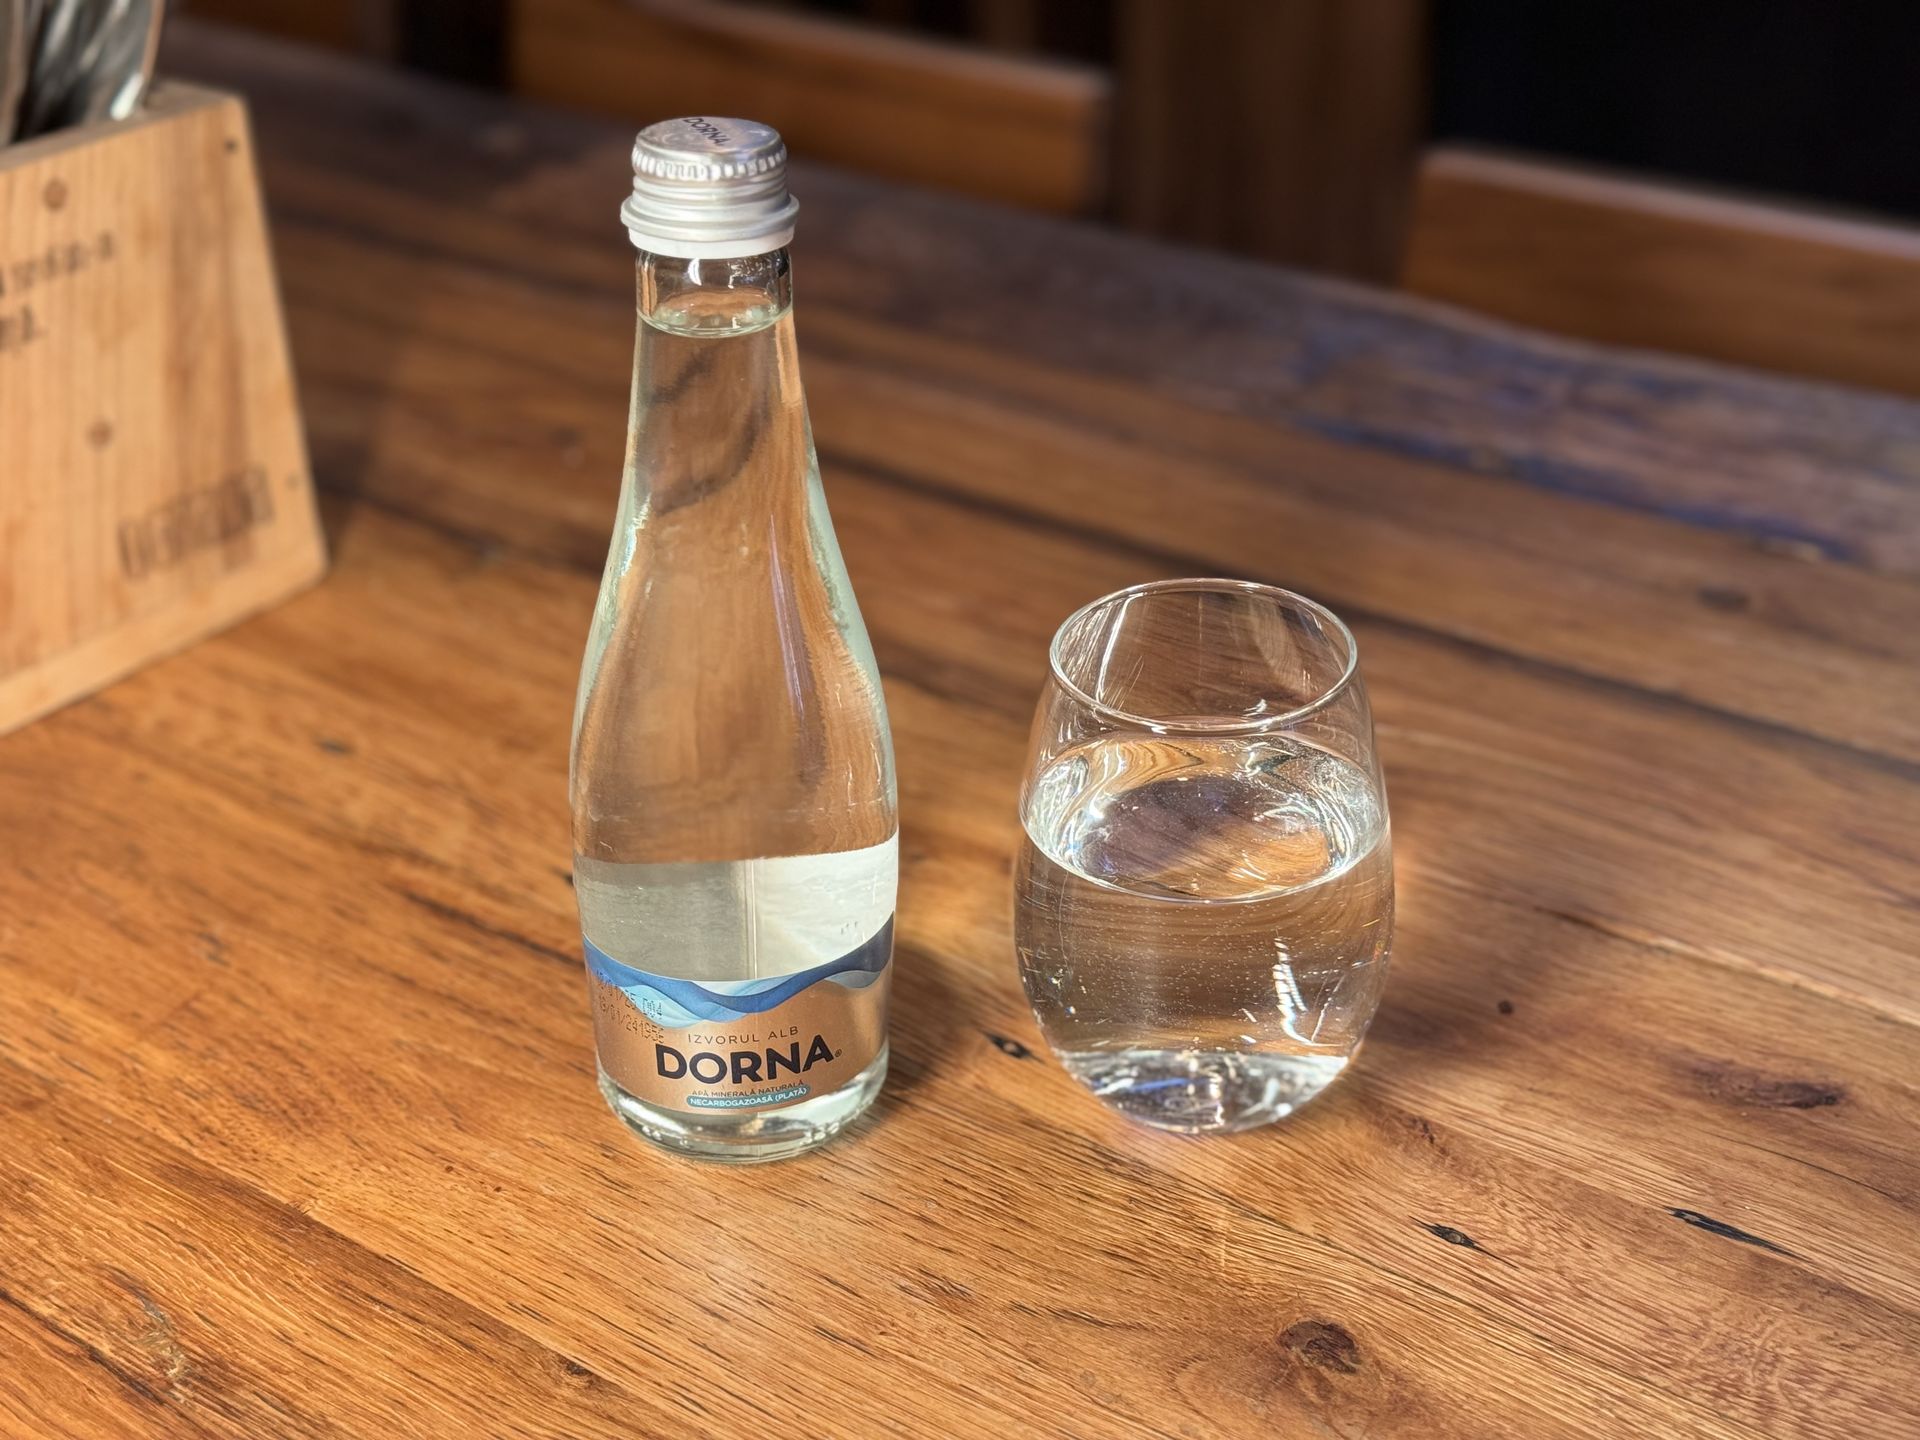 Dorna mineral water still